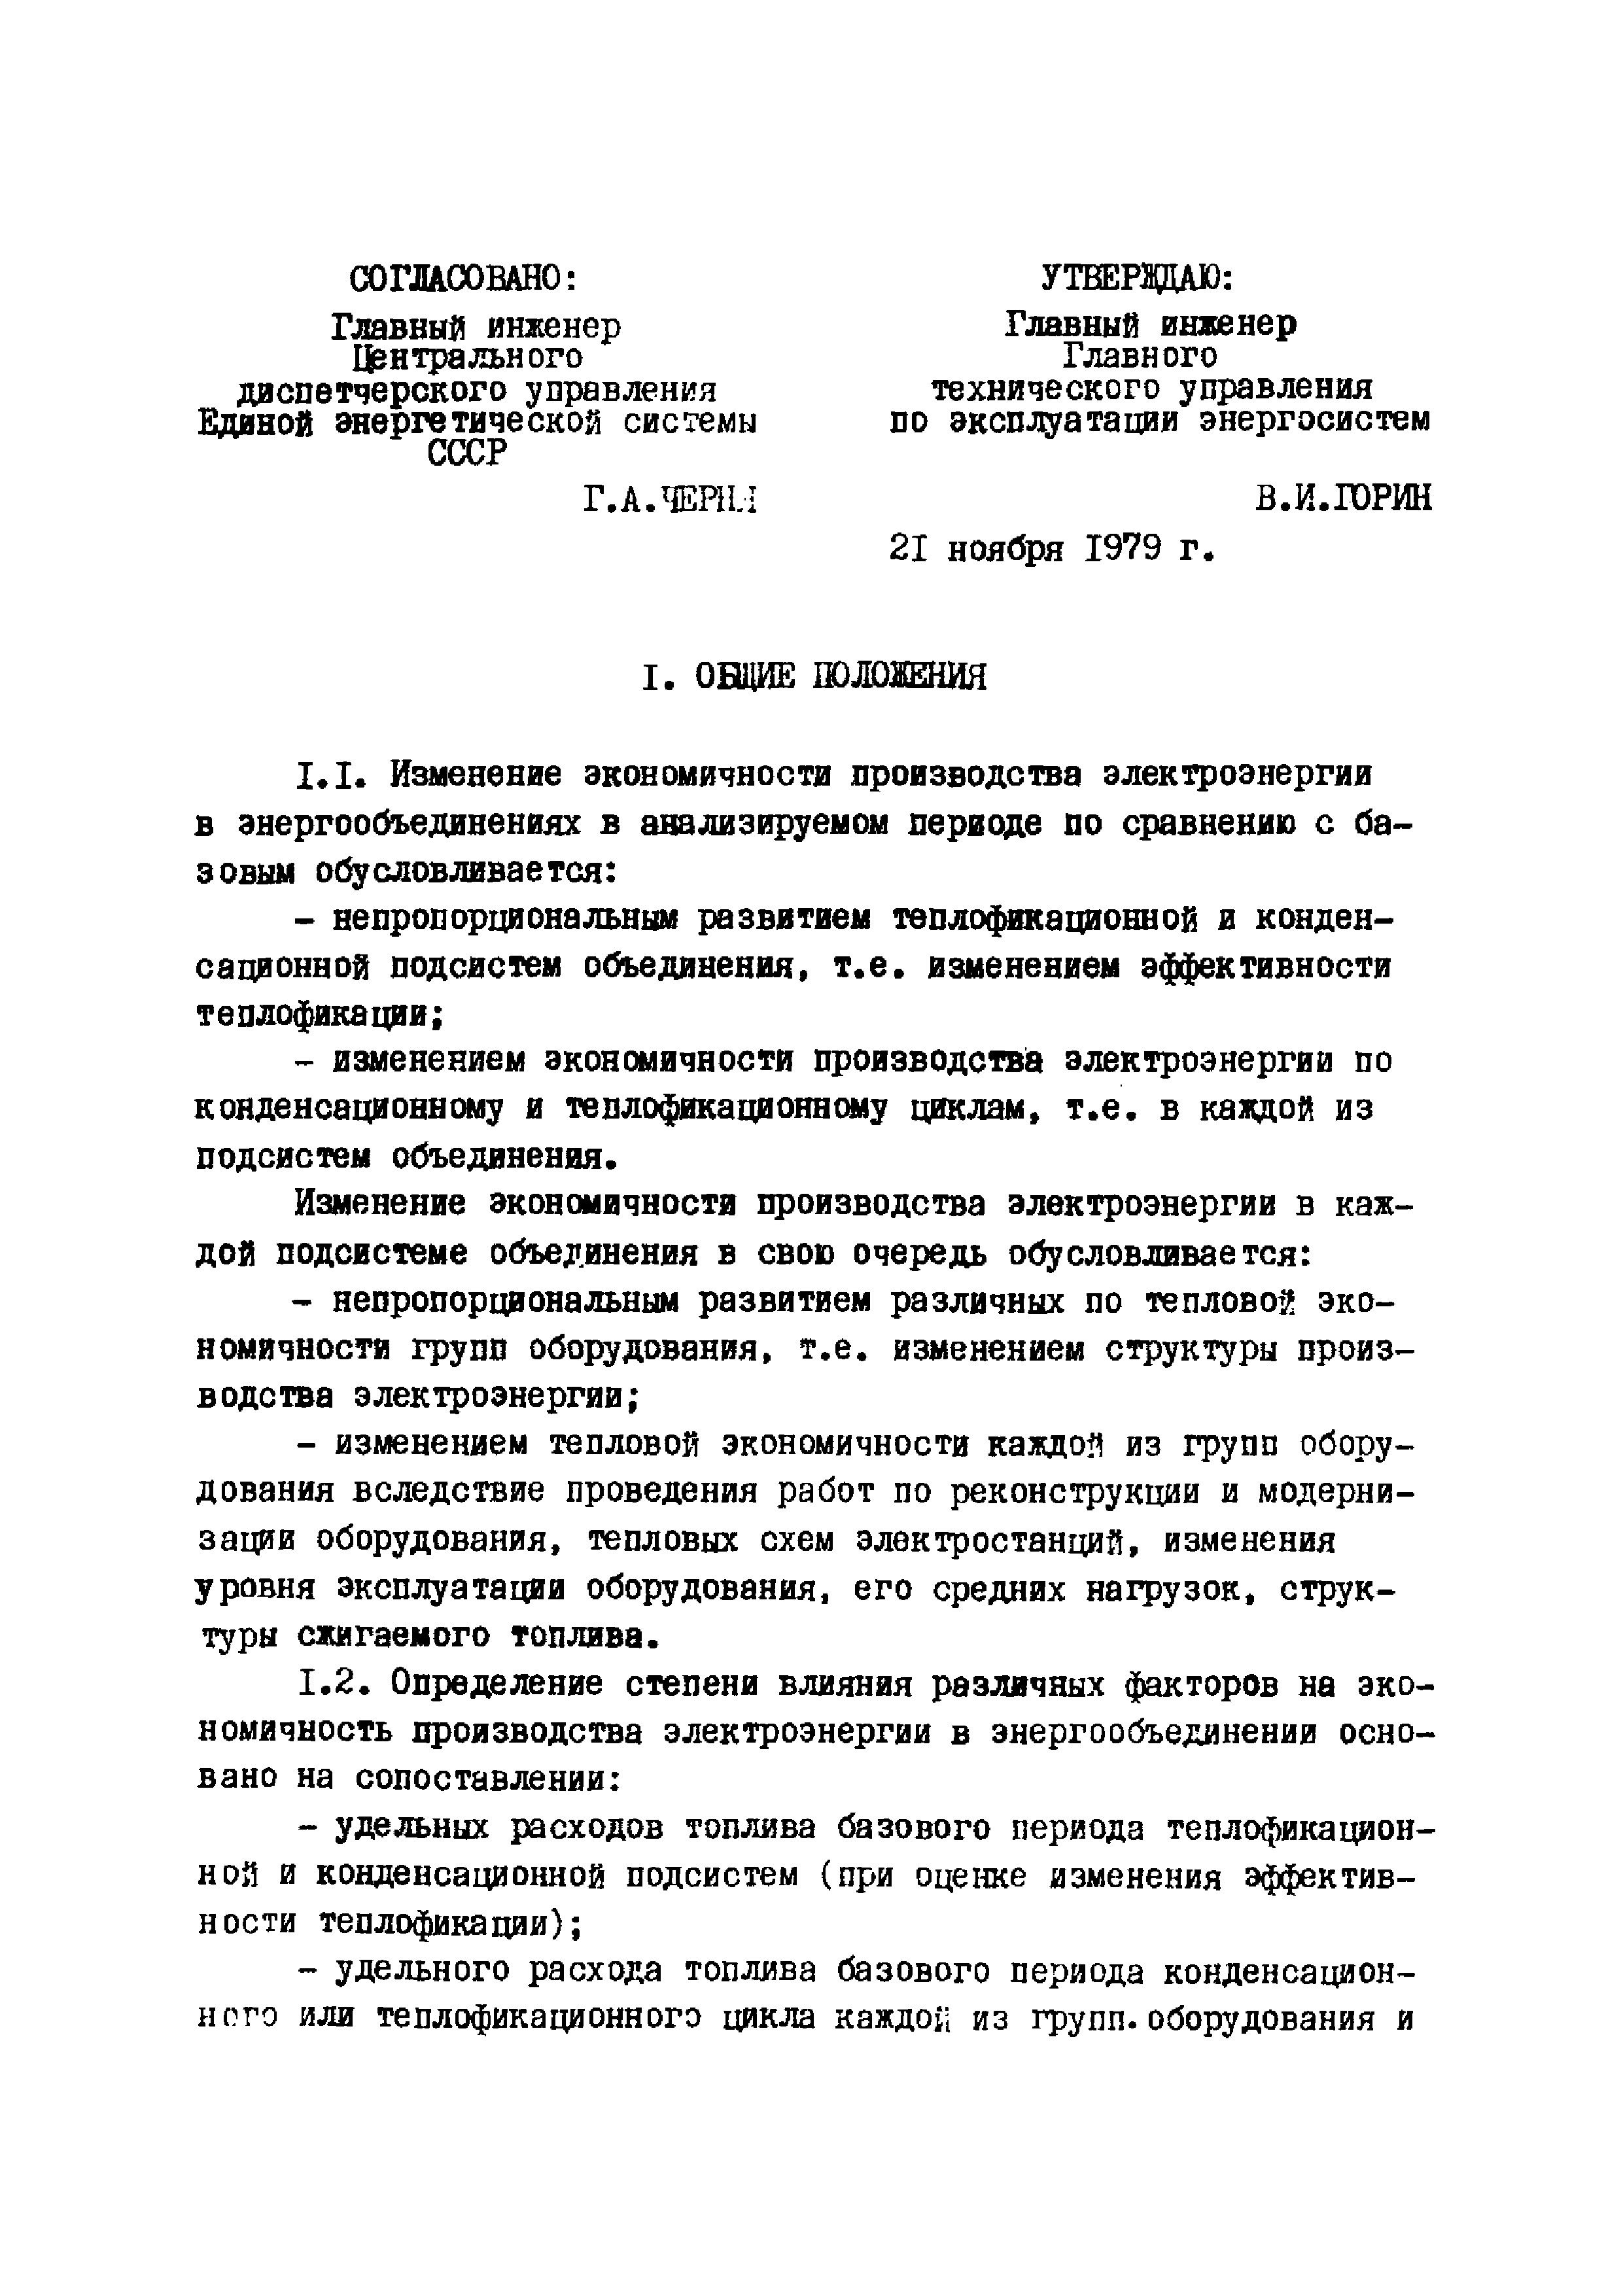 Эксплуатационный циркуляр Т-3/80